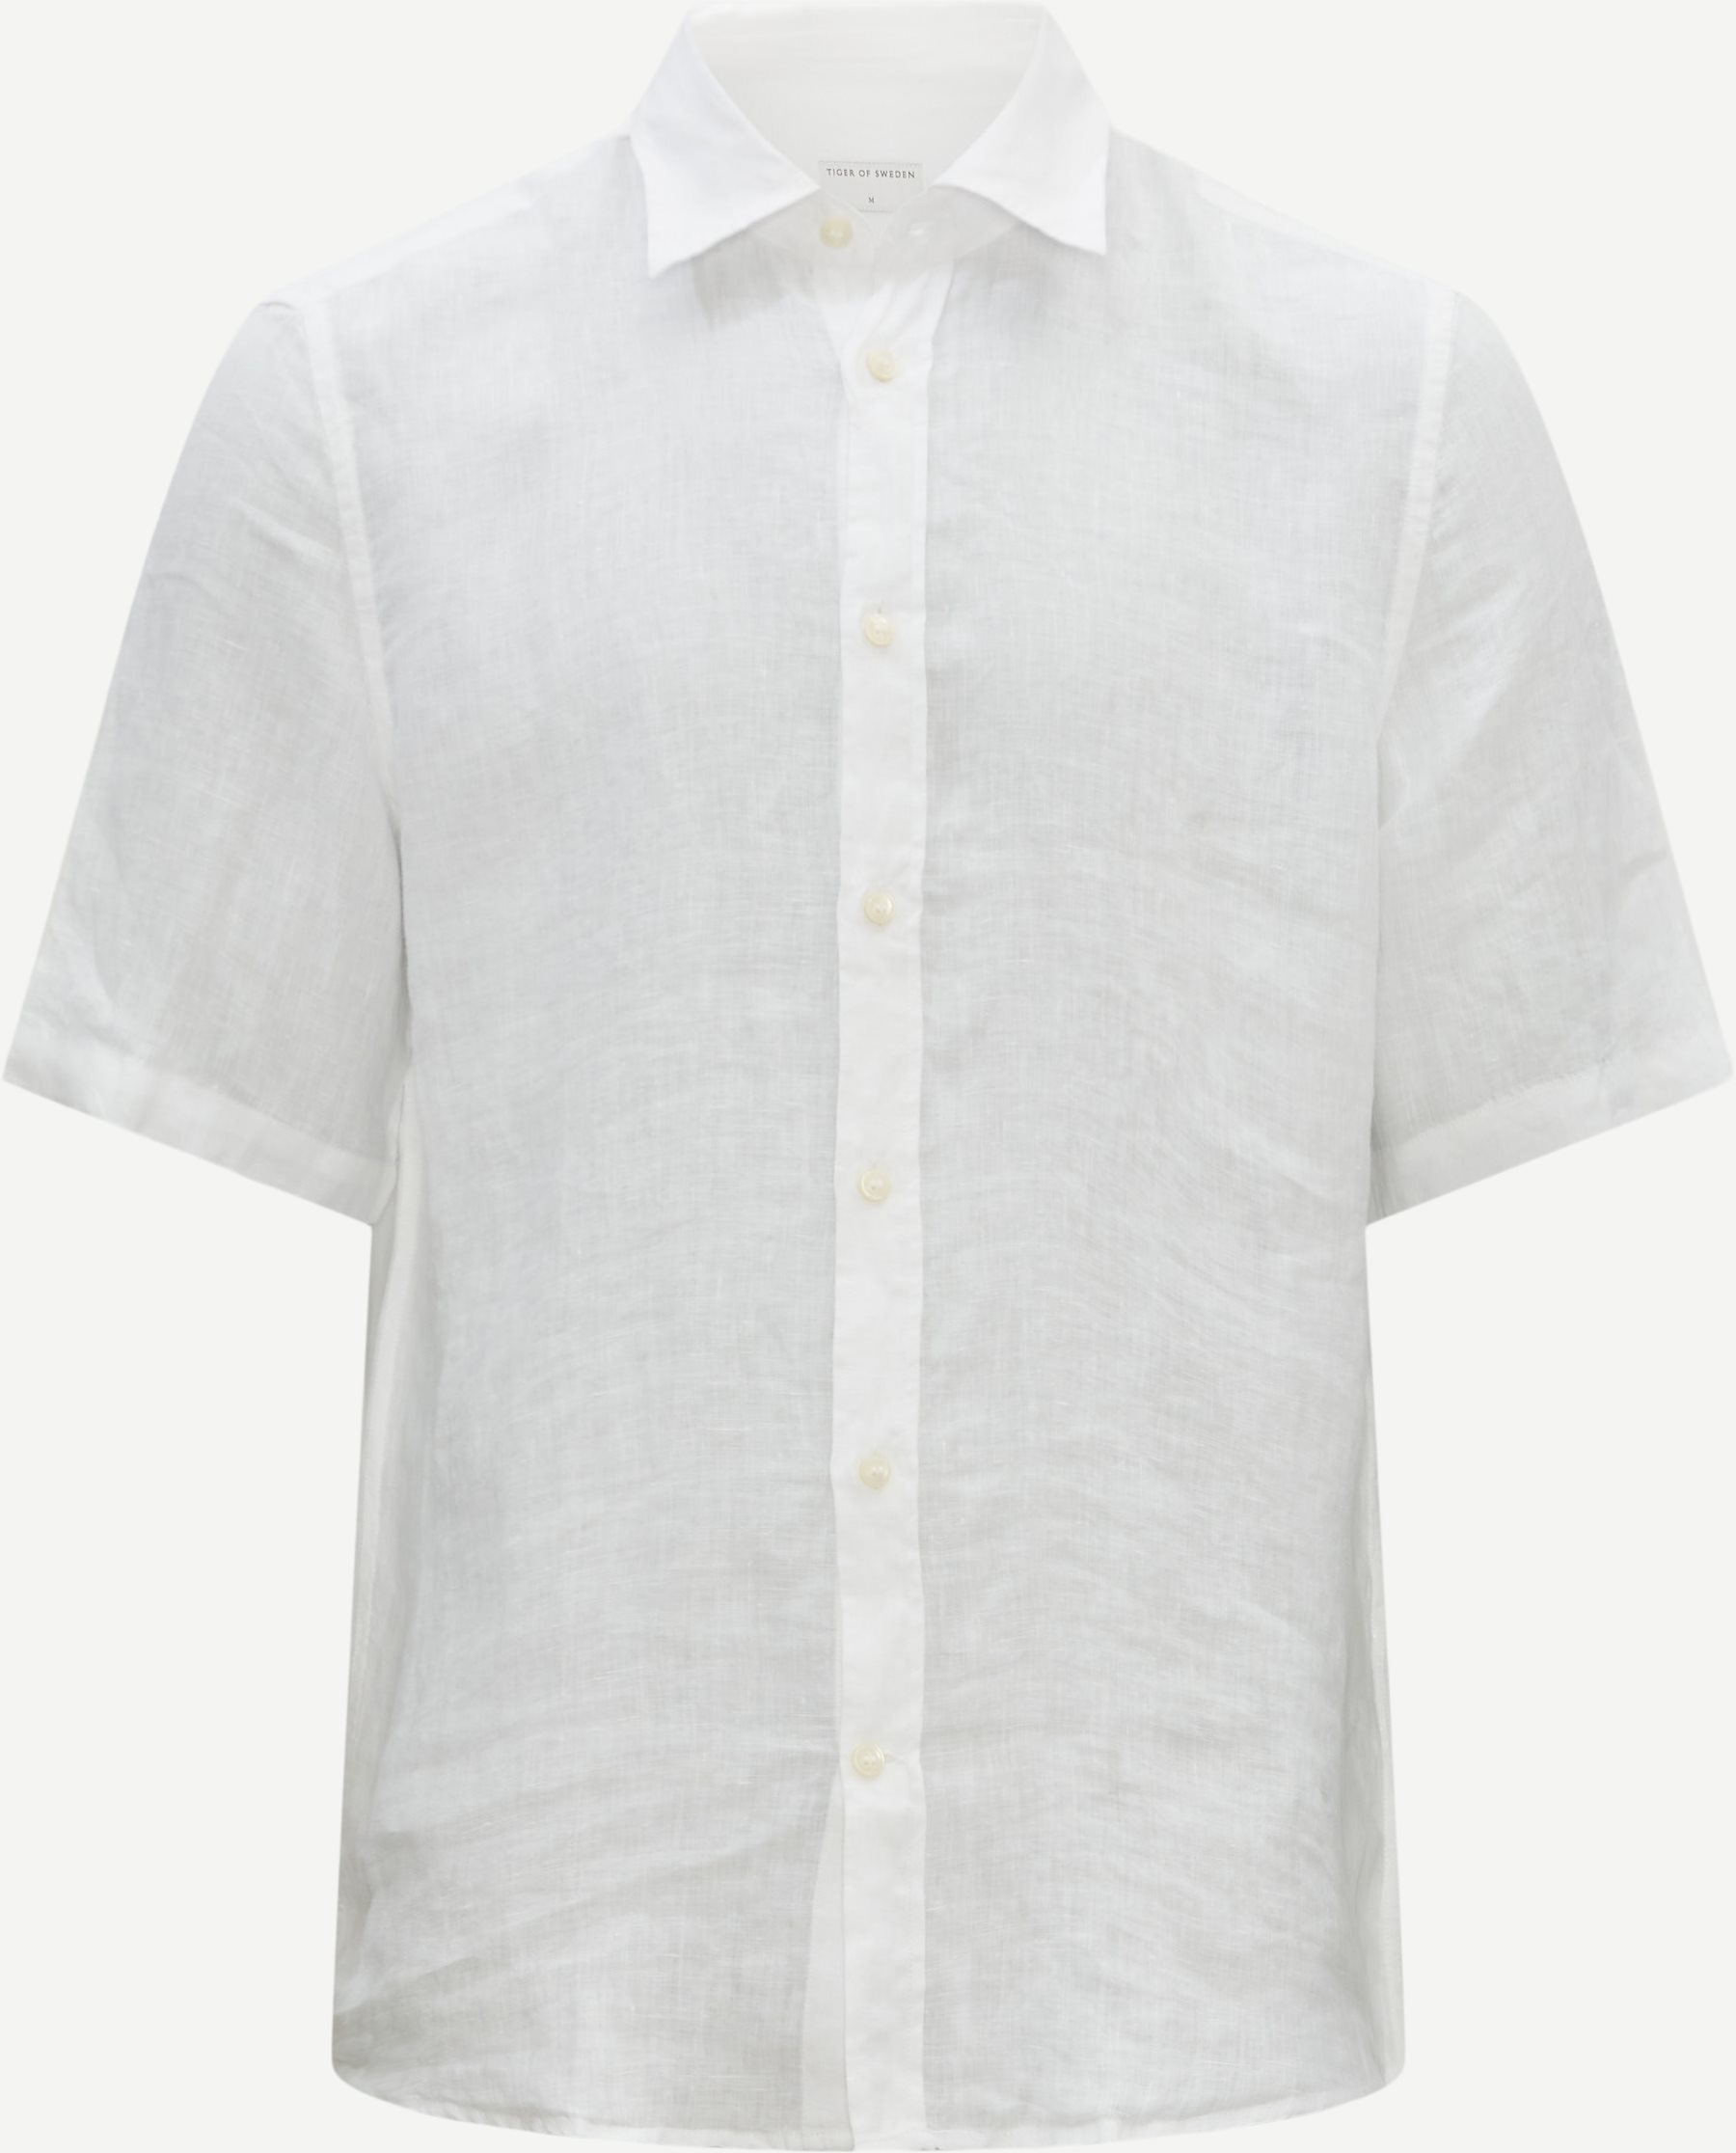 Tiger of Sweden Short-sleeved shirts 69002 ENREE White